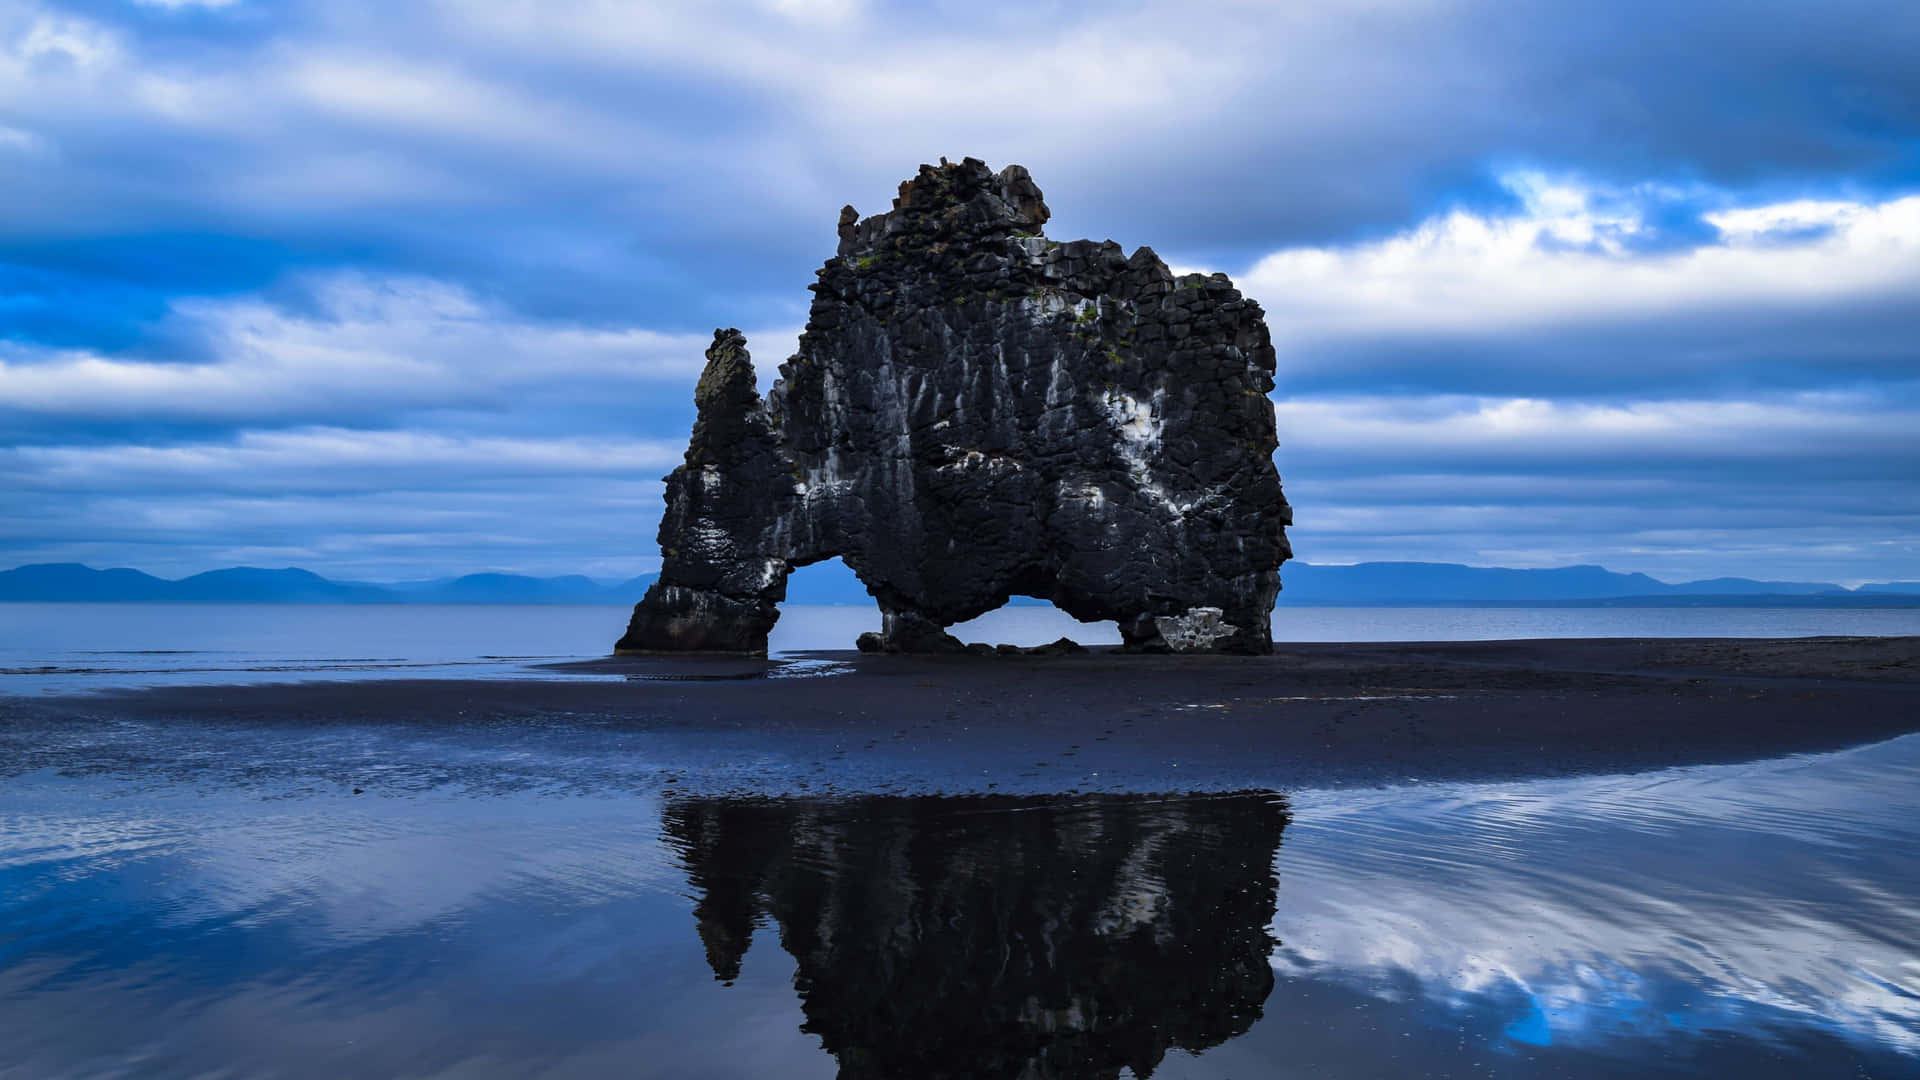 Sfondoper Il Desktop: Formazione Rocciosa In Islanda Sfondo